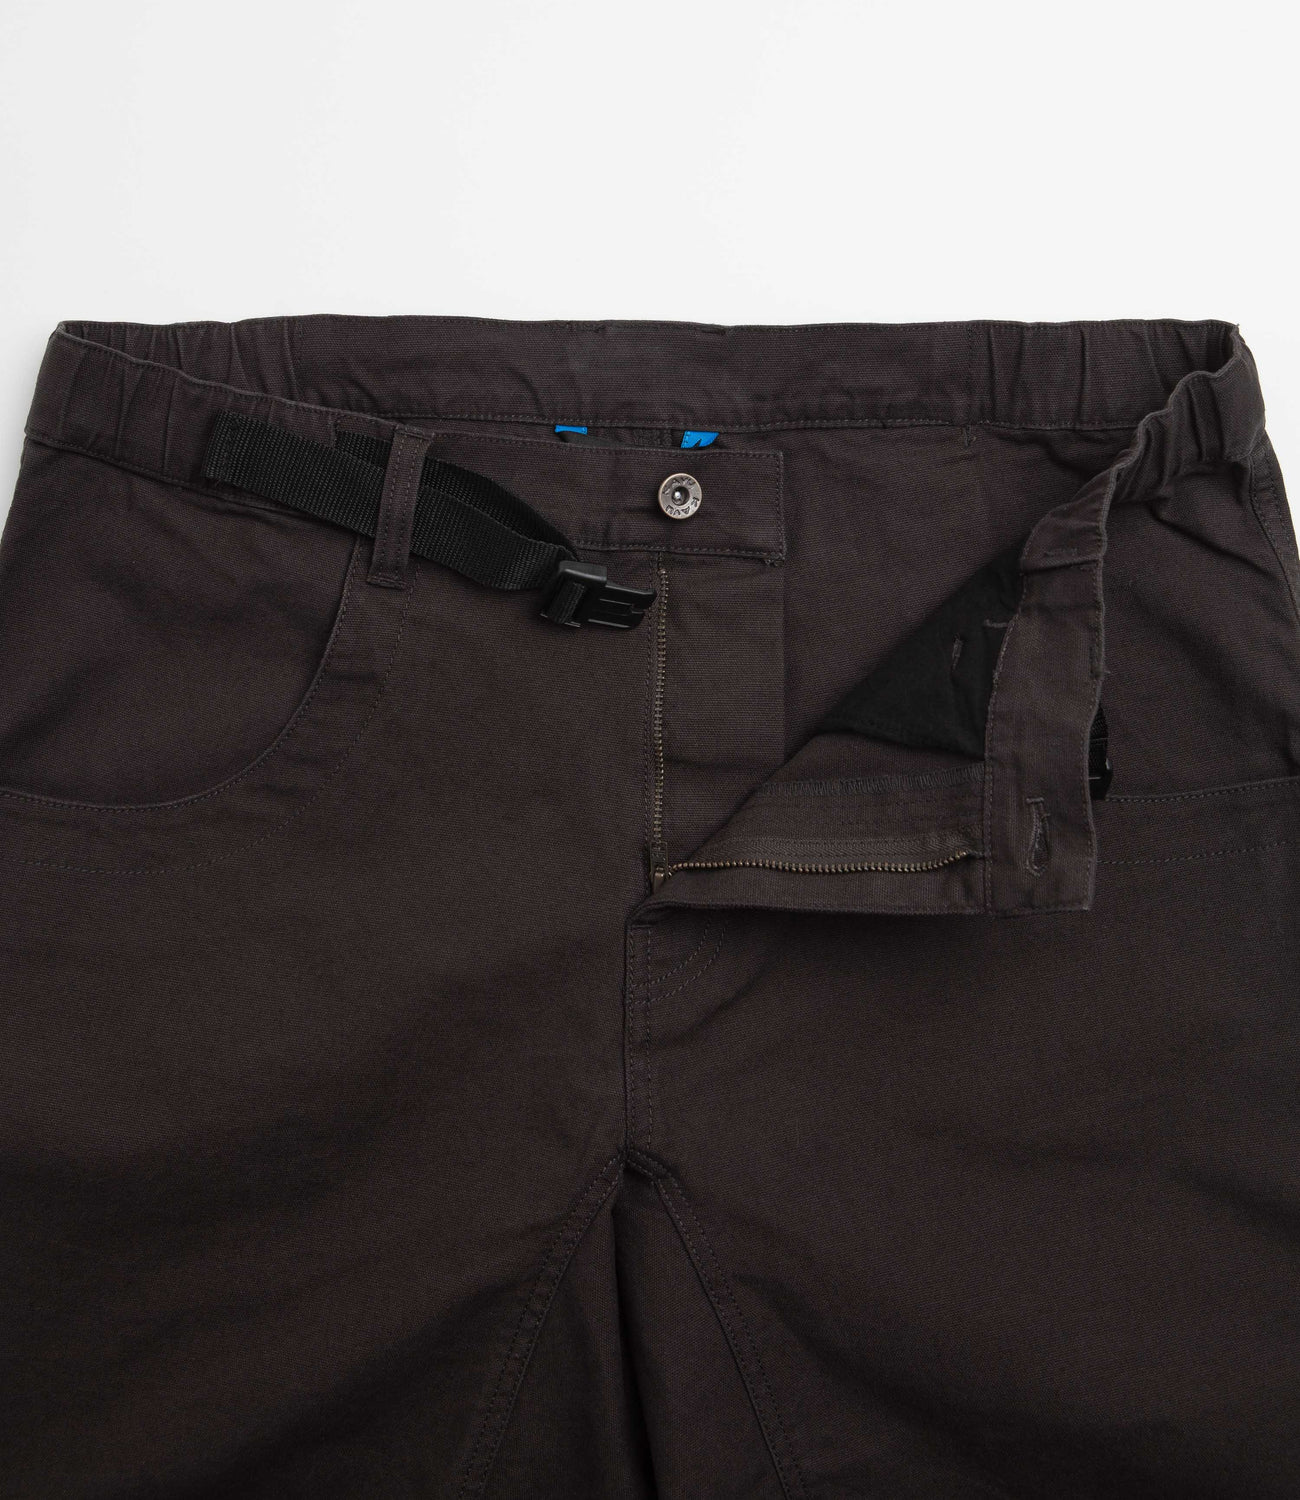 Kavu Chilli Flex Shorts - Black Licorice | Flatspot